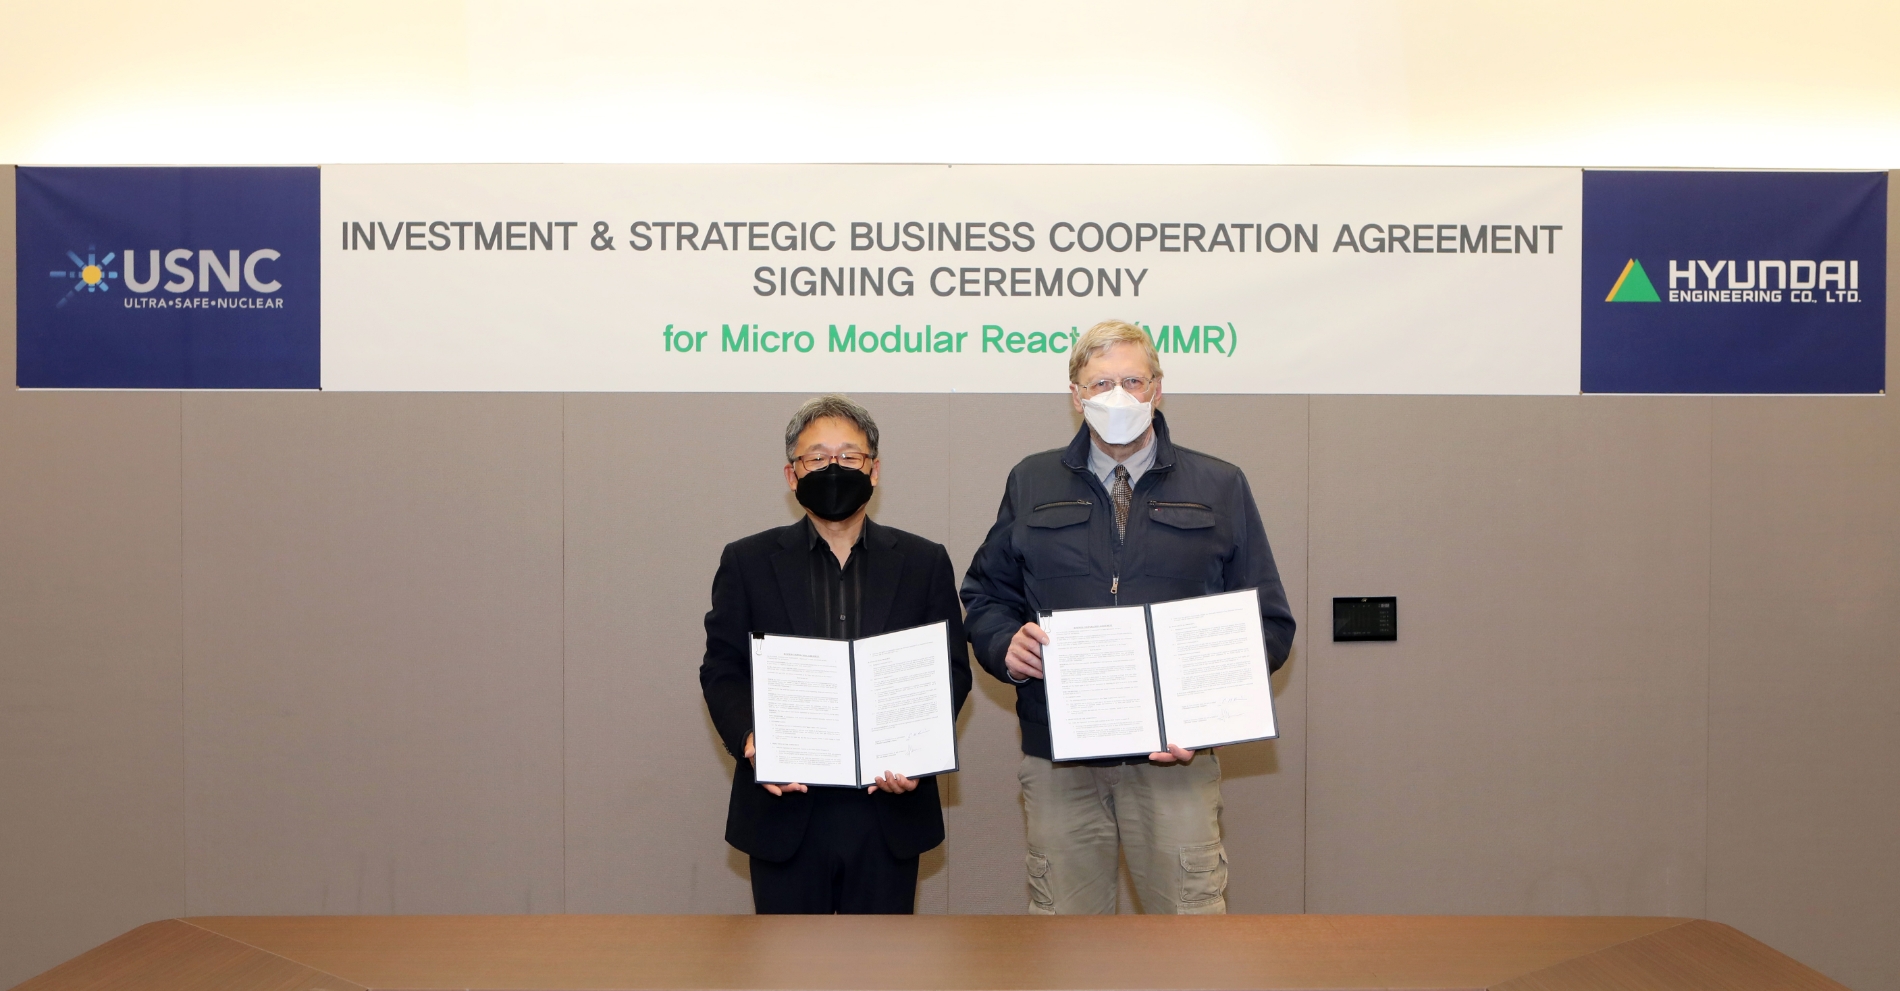 김창학 현대엔지니어링 사장(왼쪽)과 프란체스코 베네리 USNC CEO가 투자협약을 체결하고 기념사진을 촬영하고 있다. / 사진제공=현대엔지니어링